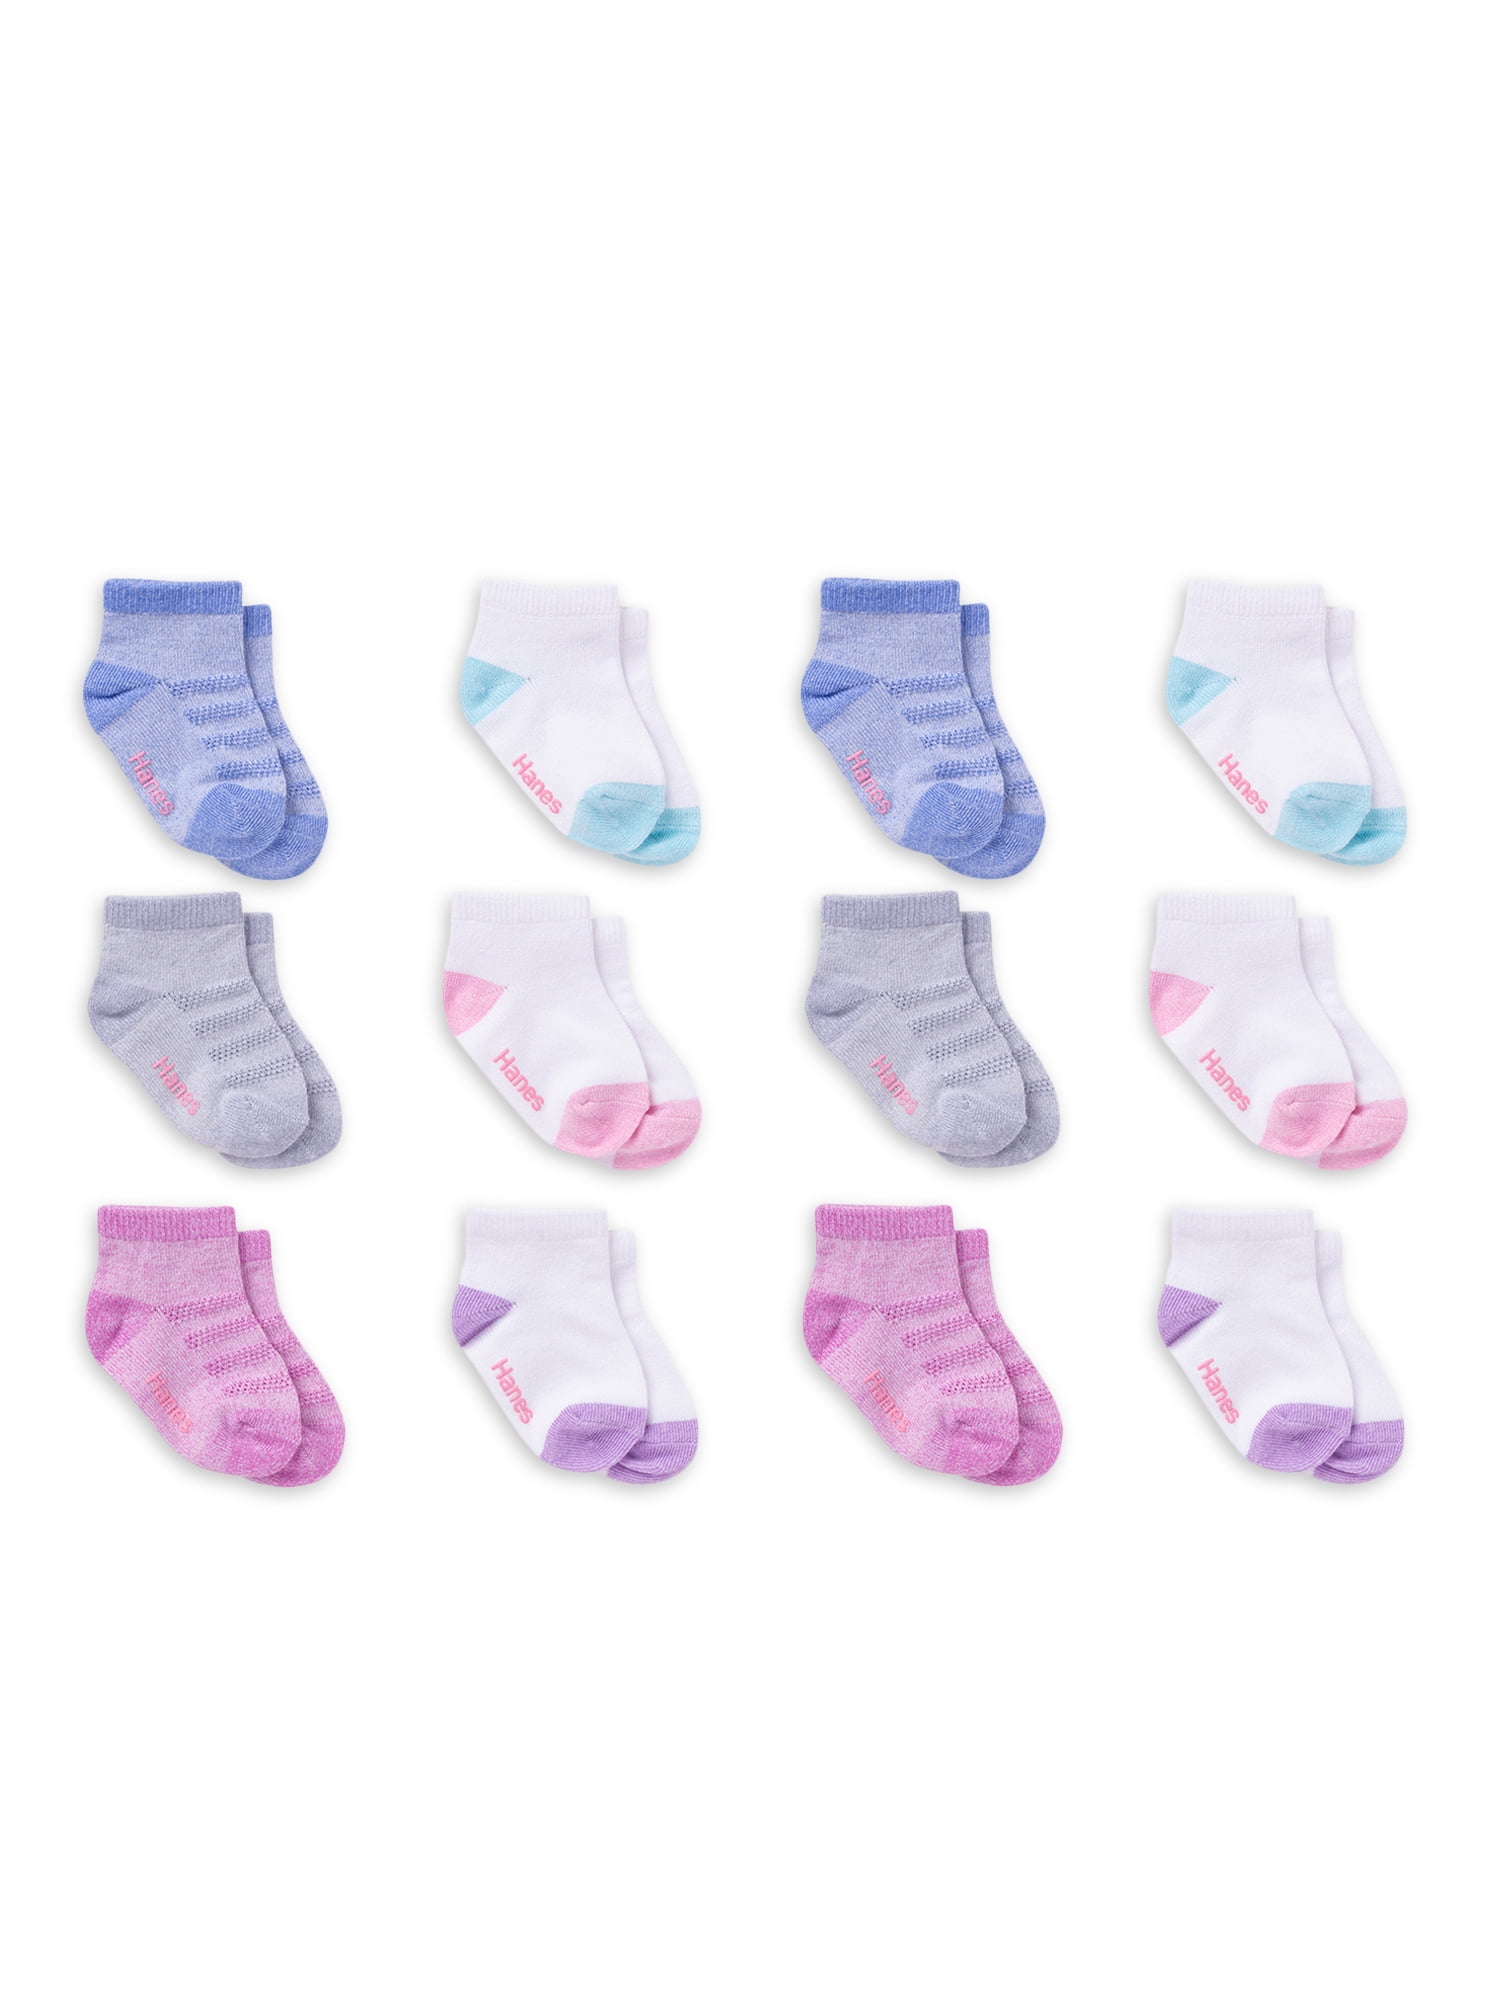 Hanes Socks Childrens Apparel Girls Toddler Ankle Socks 6/4T-5T 